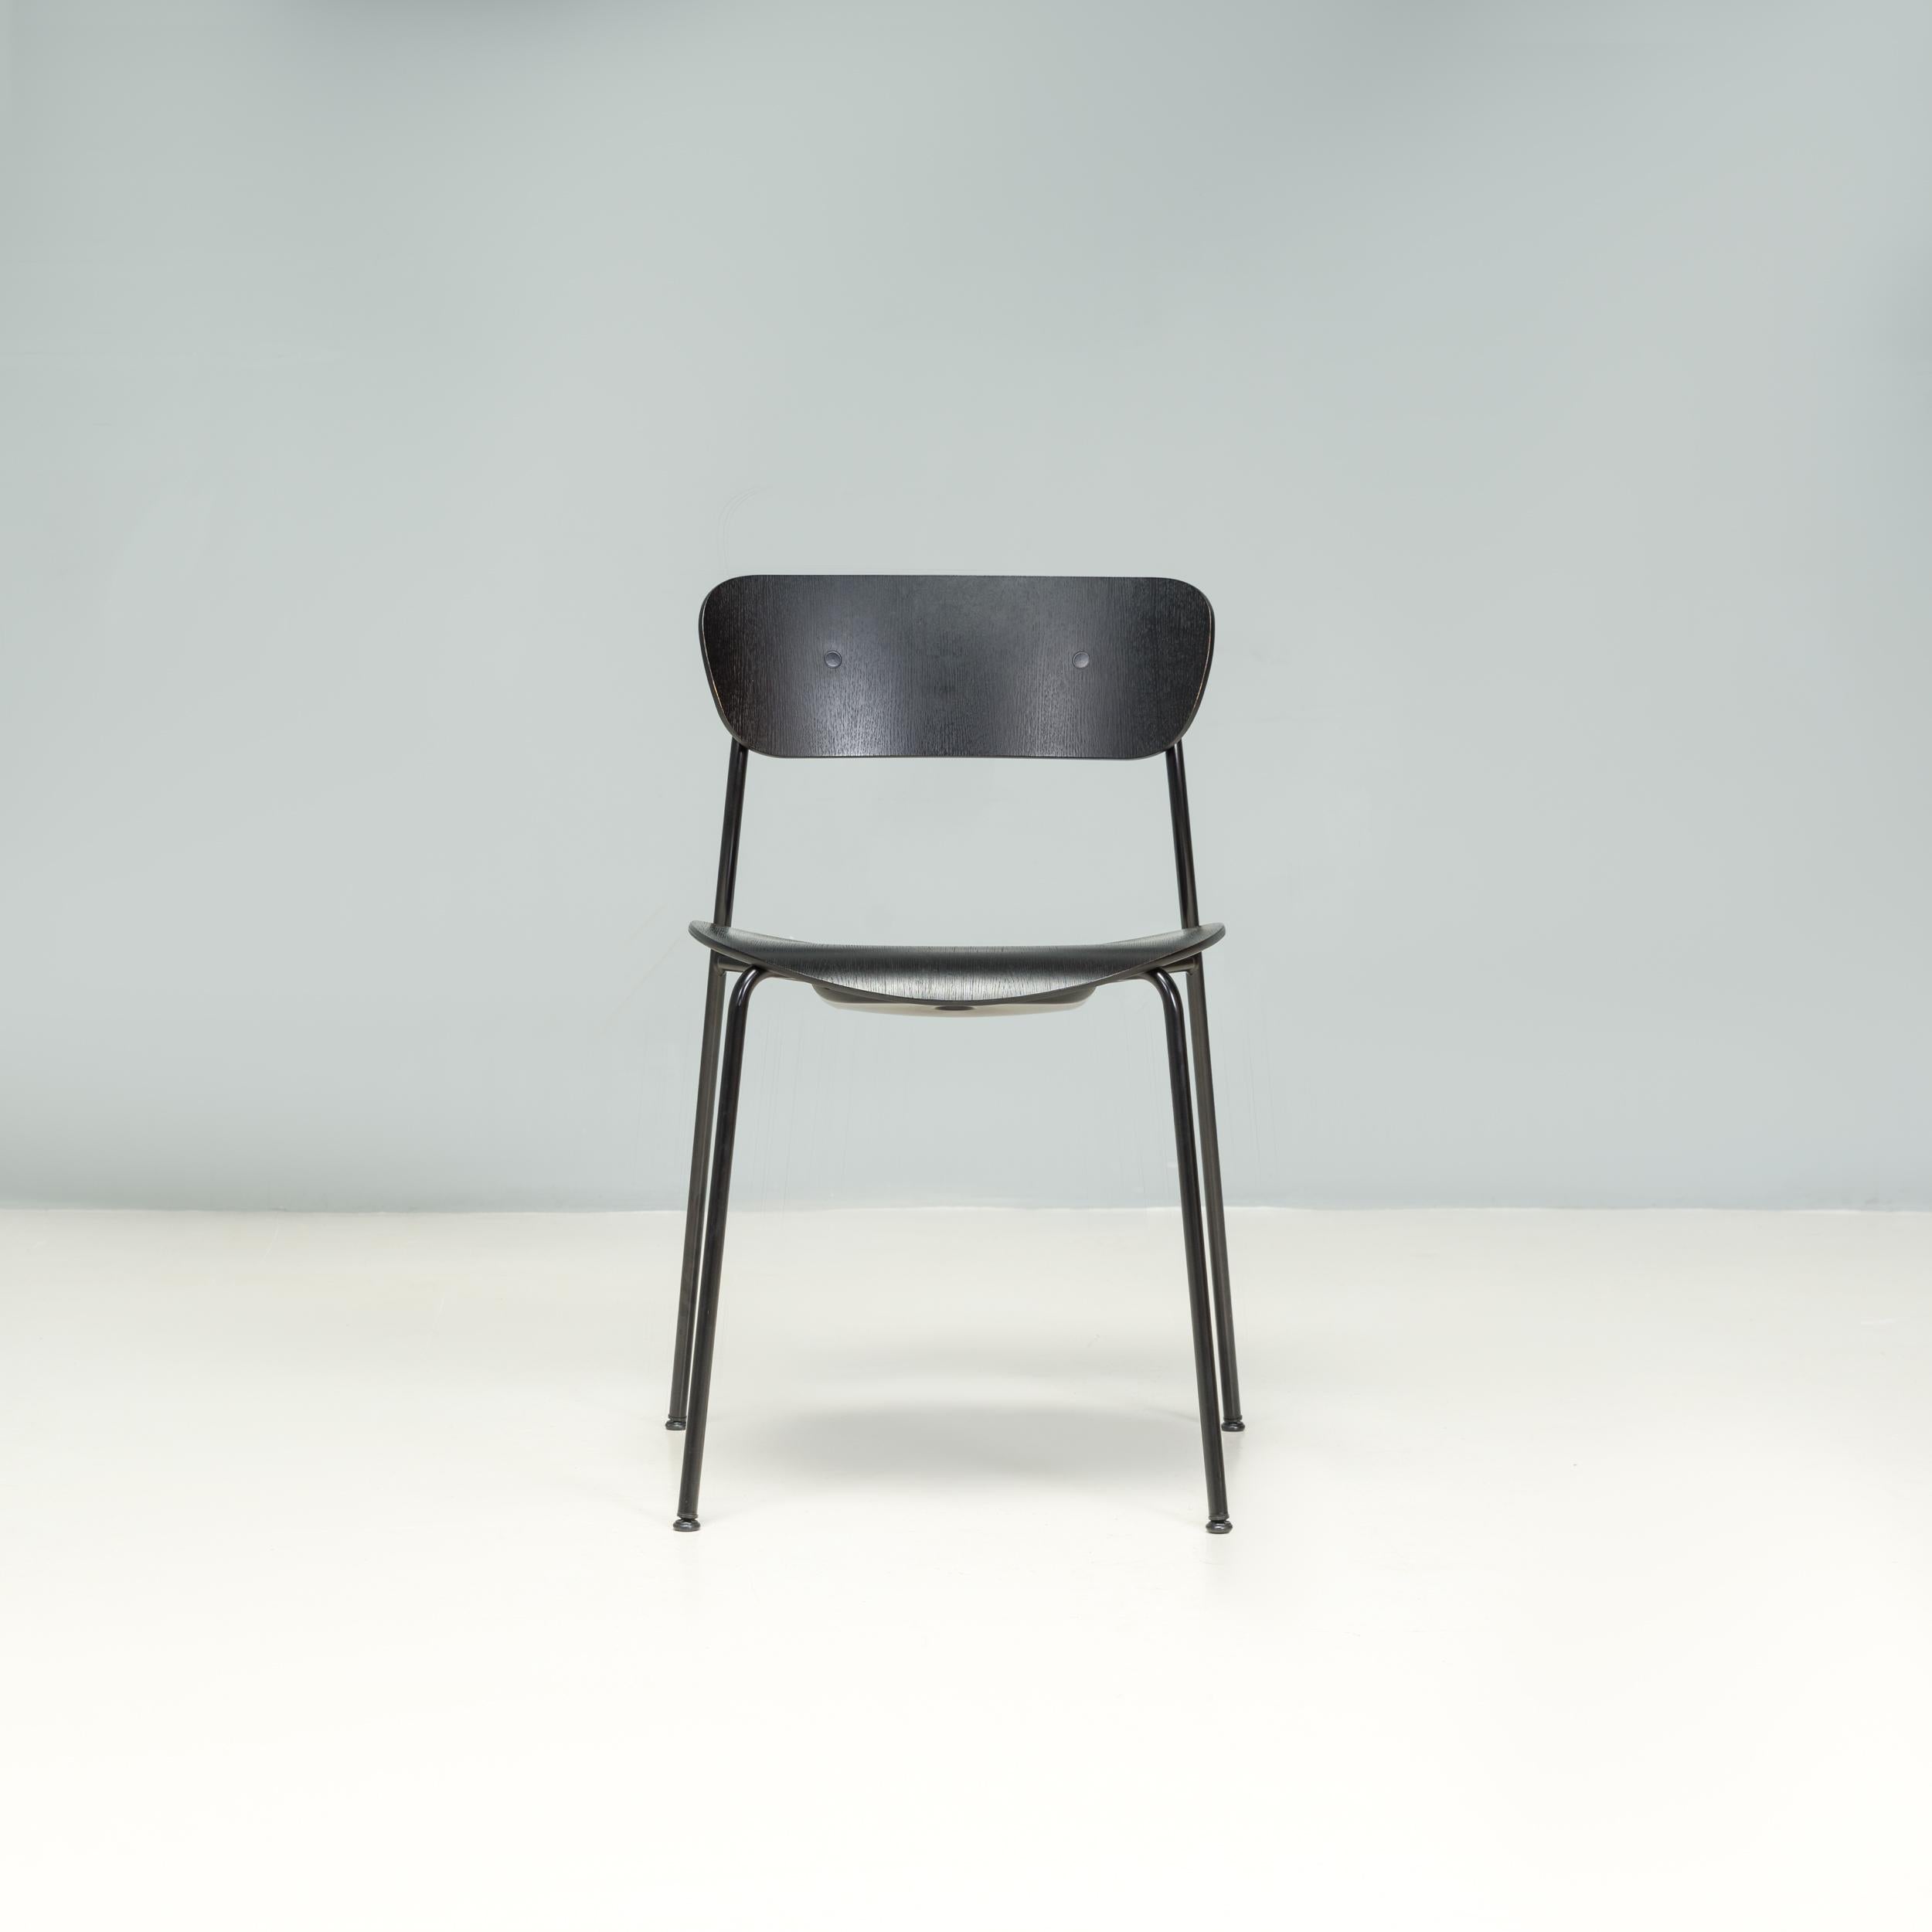 Die 2018 von den norwegischen Designern Torbjørn Anderssen und Espen Voll entworfenen AV1-Stühle sind Teil der Pavilion-Kollektion, die von der dänischen Möbelmarke &Tradition hergestellt wird.

Der Auftrag für die Collection'S war eine